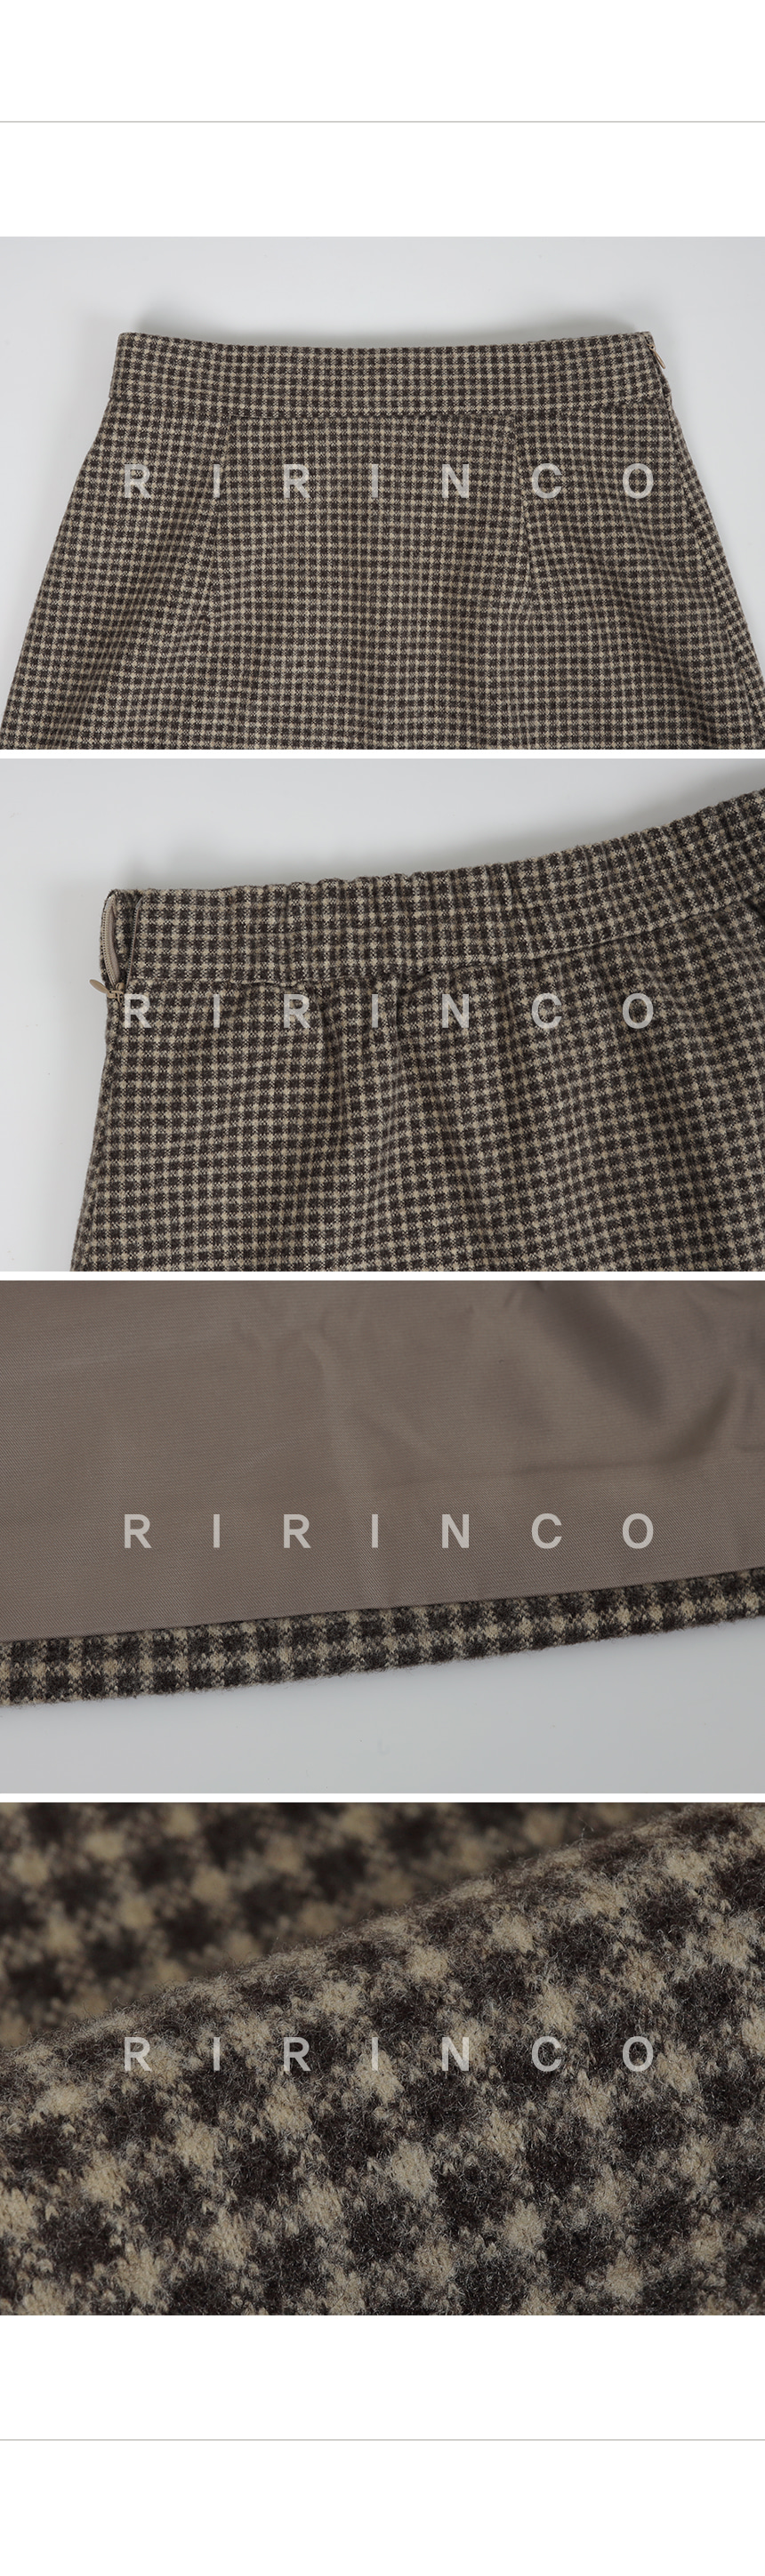 RIRINCO チェック柄ツーピースバックゴムスカート